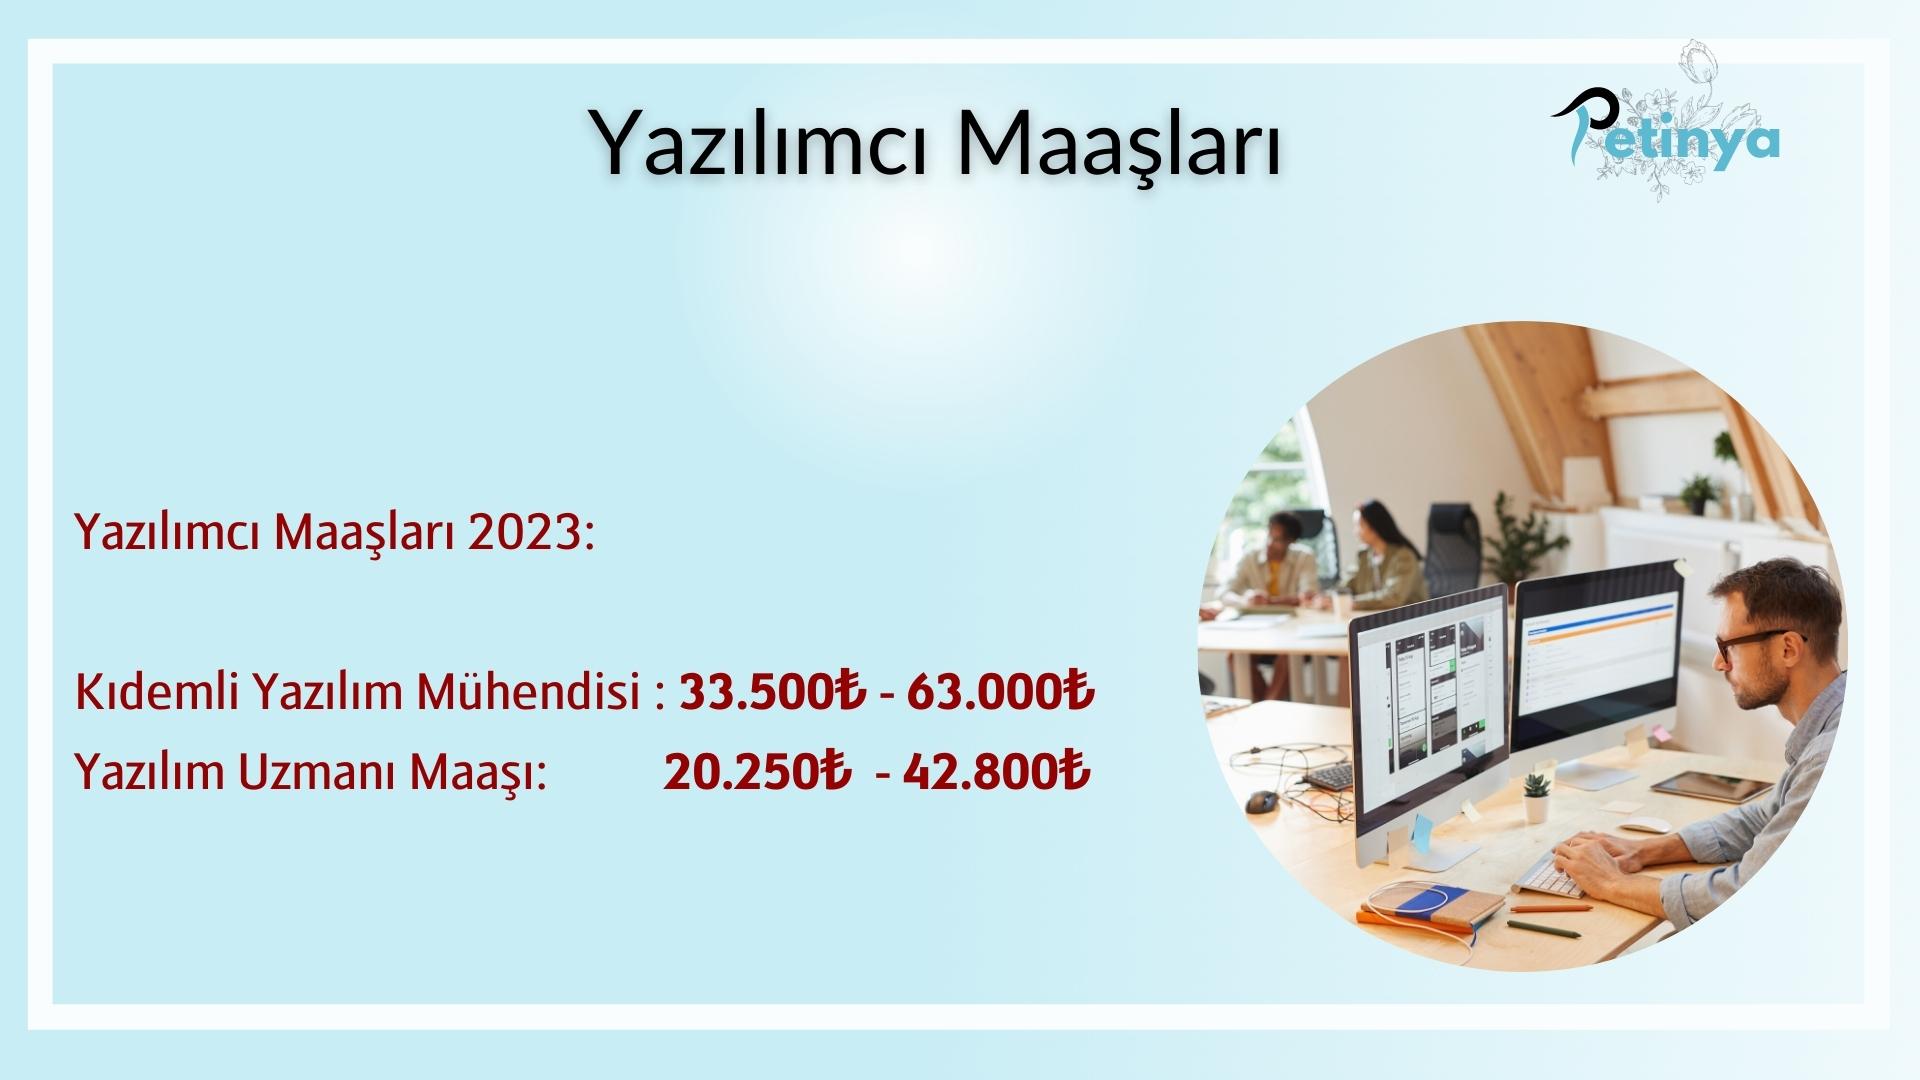 Yazılımcı Maaşları: Türkiye'de Yazılımcıların Maaşları 2023